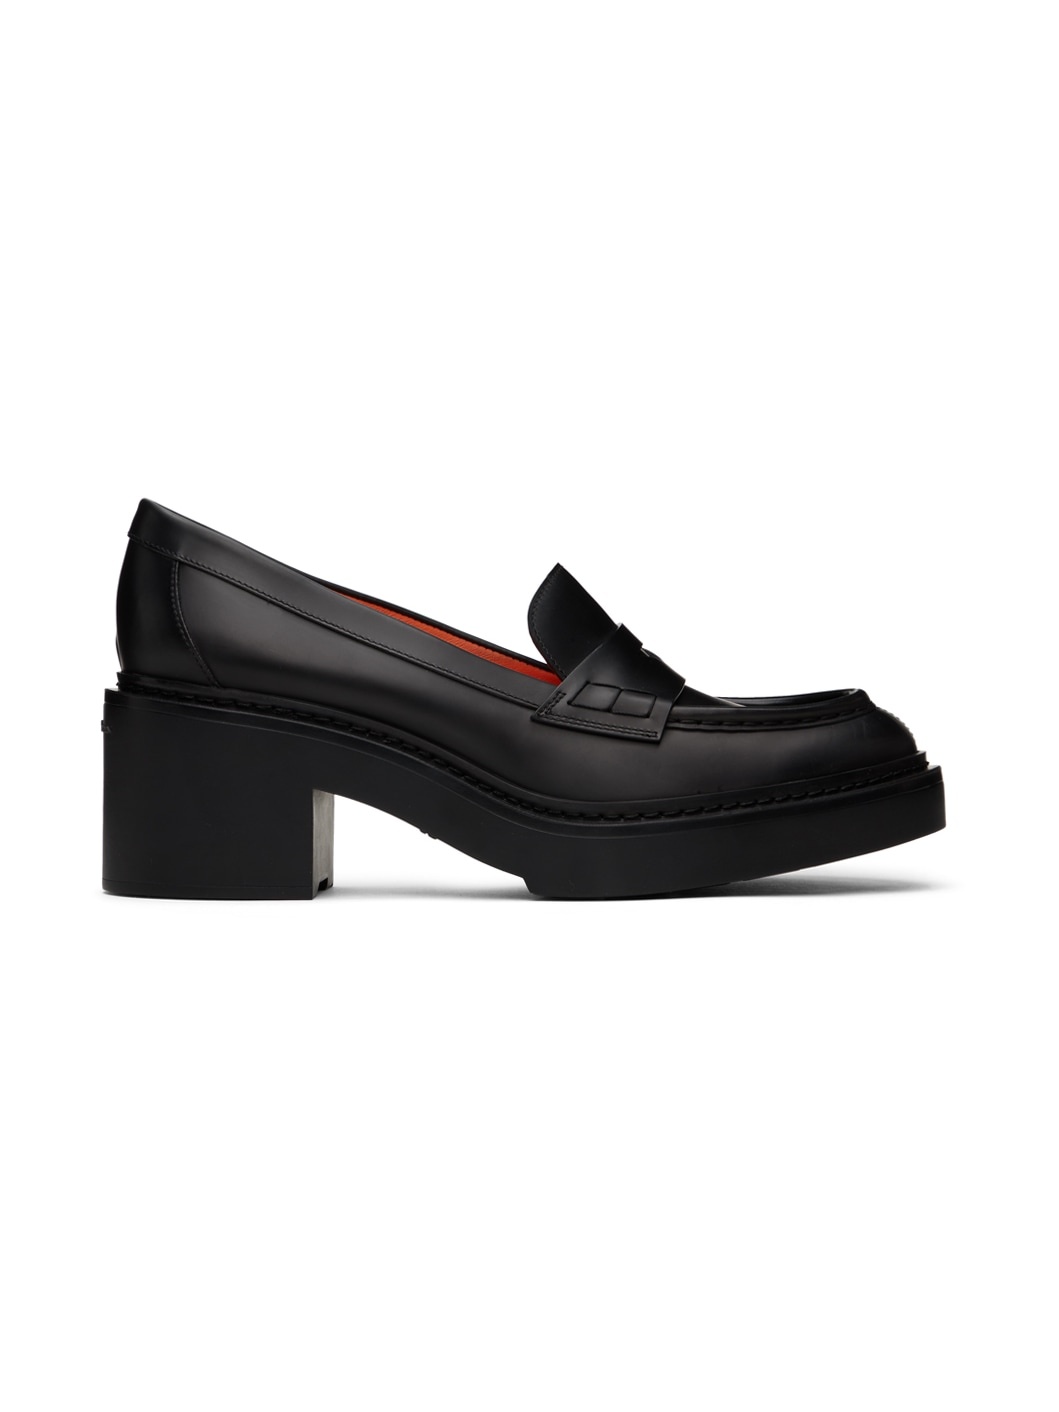 Black Loafer Heels - 1